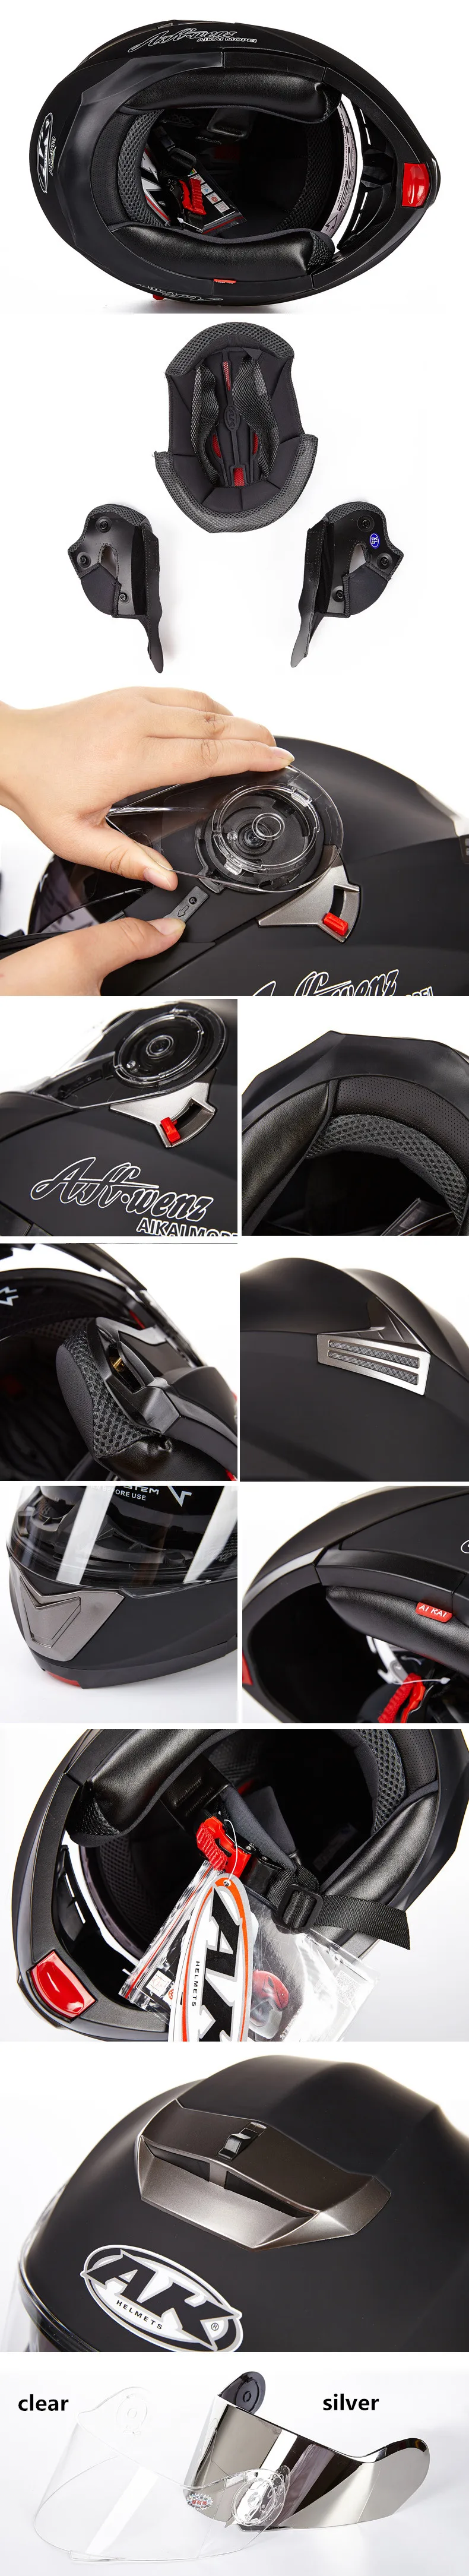 Лучшие продажи, безопасный шлем для всего лица, мотоциклетный шлем, откидной модульный шлем с внутренним солнцезащитным козырьком, мотоциклетный шлем